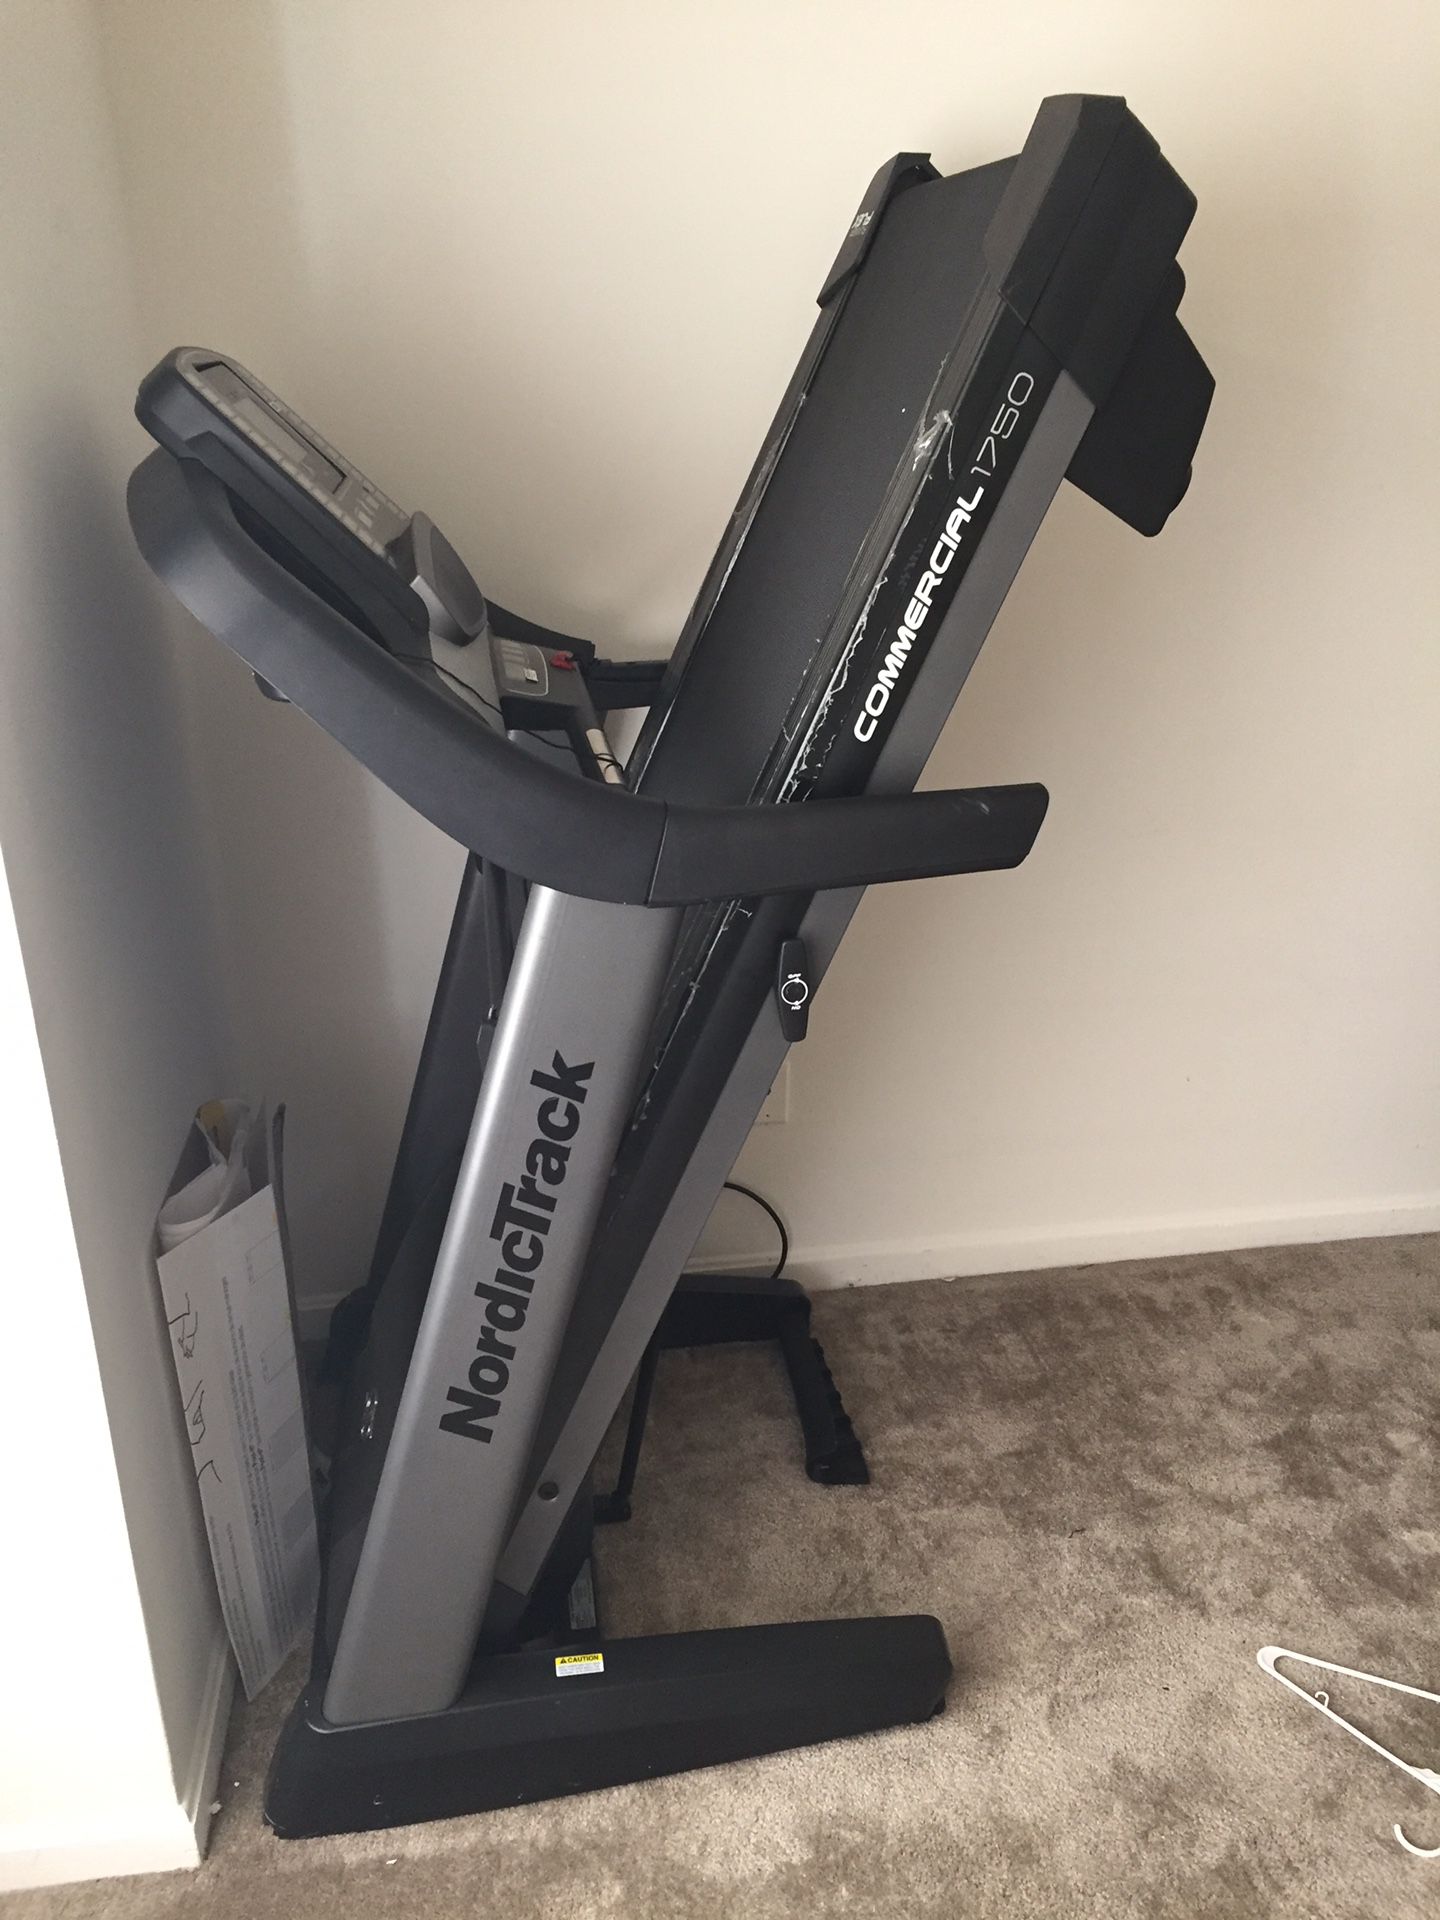 A nordictrack treadmill